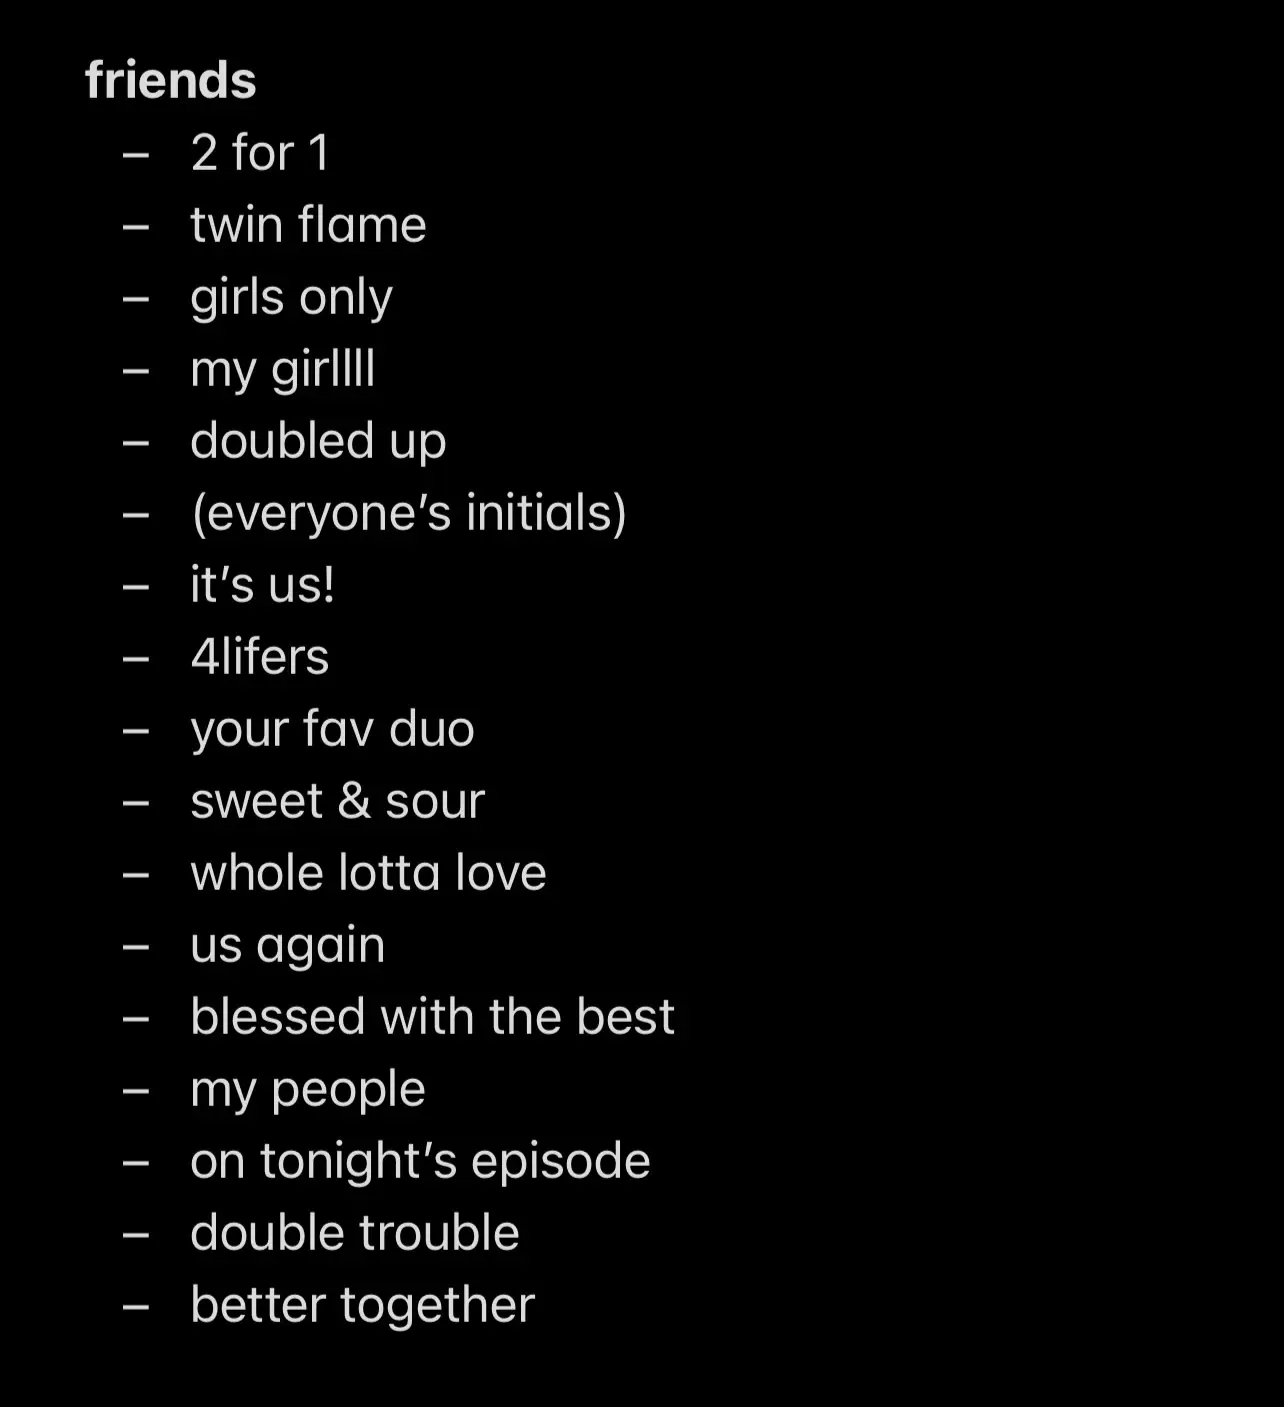  A list of friends